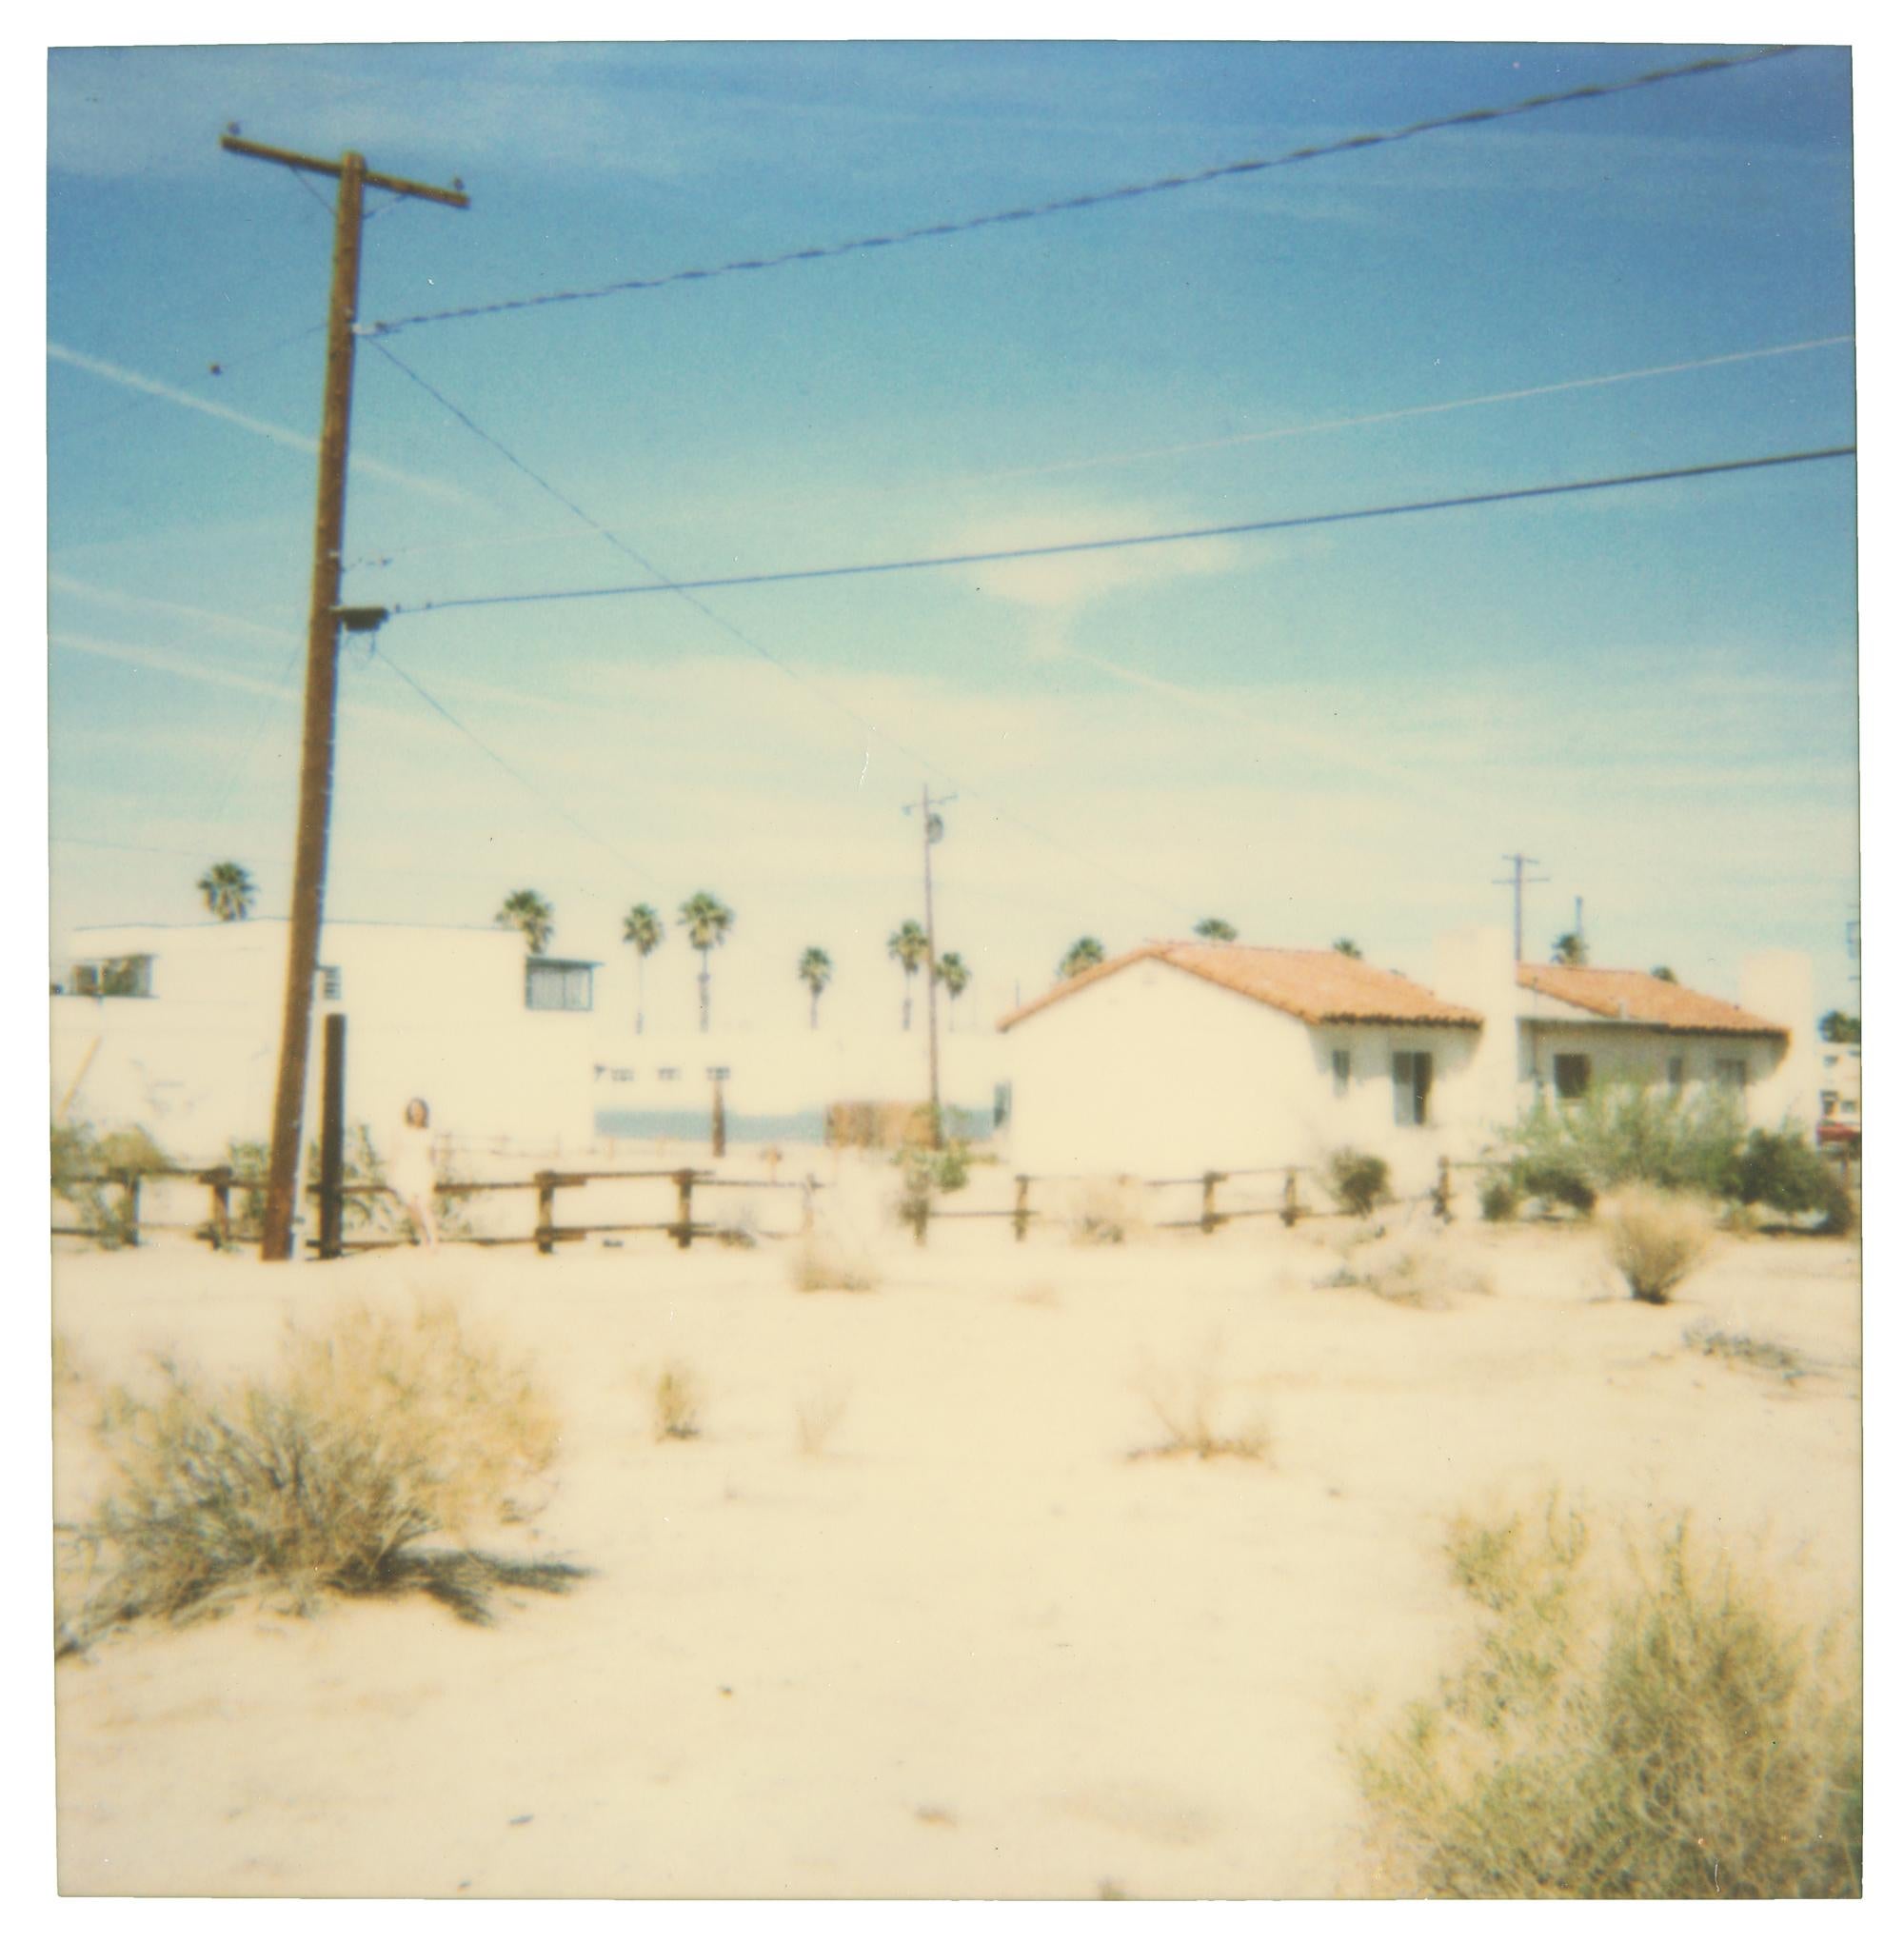 Stefanie Schneider Color Photograph – 29 Palms, Kalifornien – Analog, montiert, Polaroid, 20. Jahrhundert, Zeitgenössisch, Landschaft